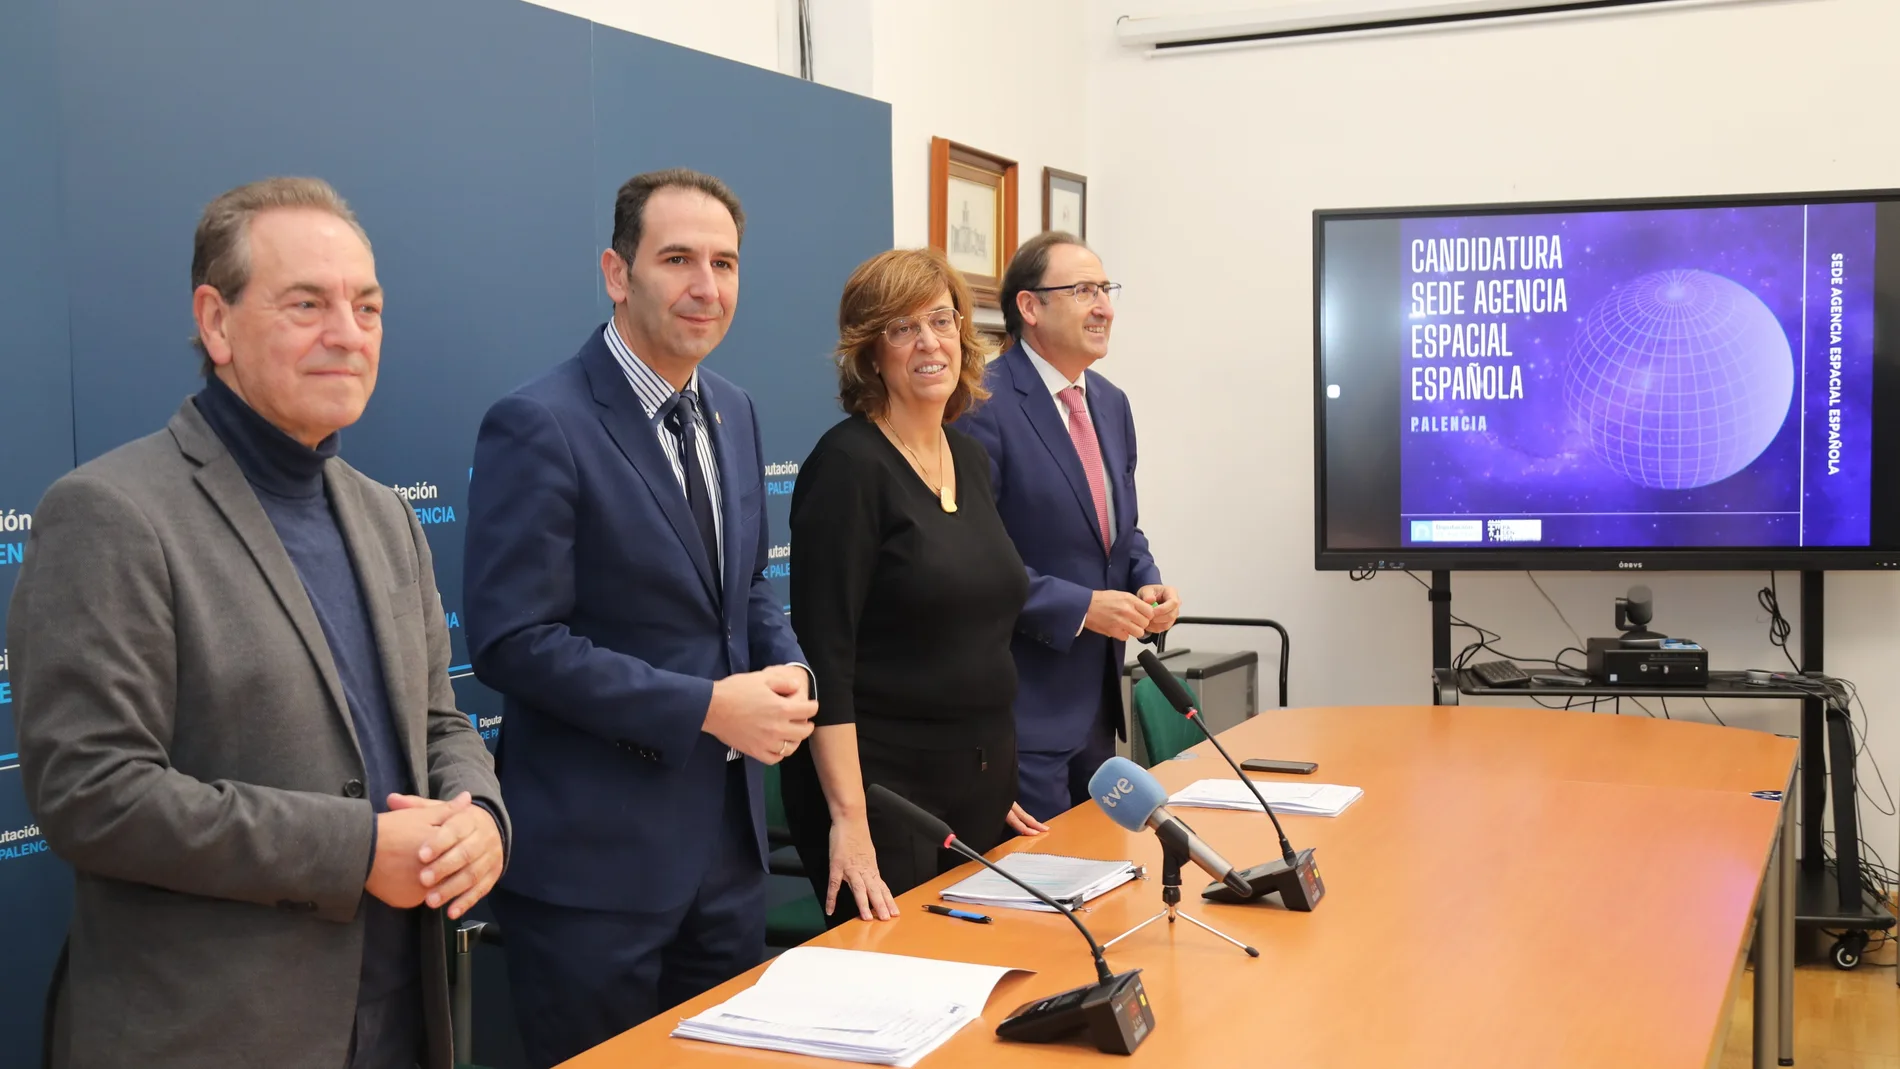 El alcalde de Palencia, Mario Simón ; y la presidenta de la Diputación, Ángeles Armisén, presentan la candidatura de Palencia como sede de la Agencia Espacial Española